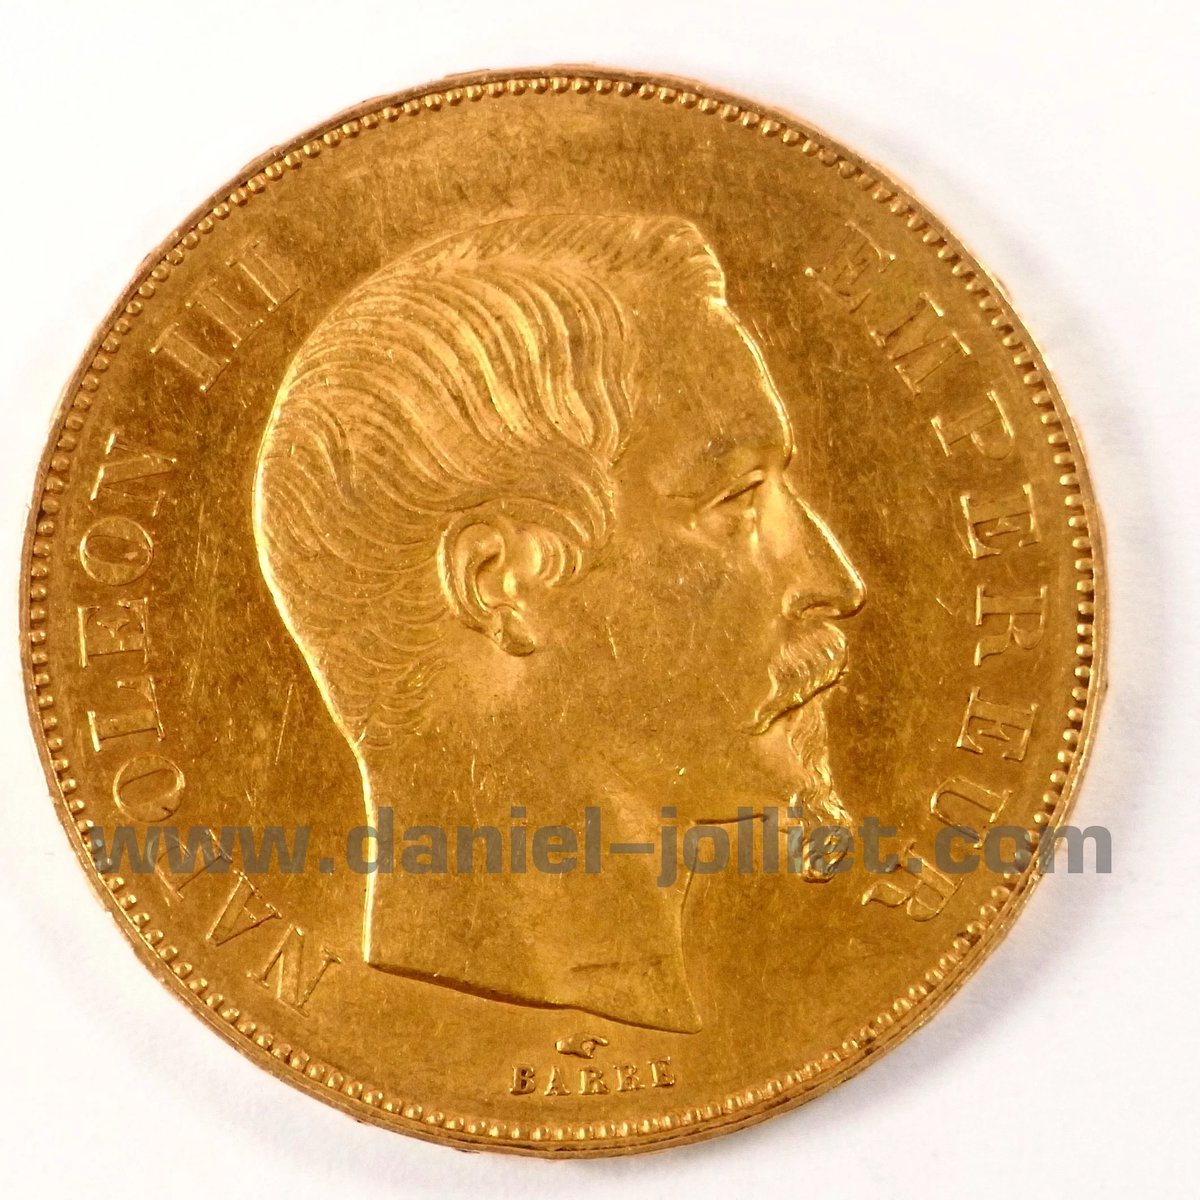 50 Francs 1856

👉 bit.ly/3QlHDpt

#1856GoldFranc
#BarreEngraving
#RareCoins
#numismatics
 #RareGoldCoins
#ncgsarl